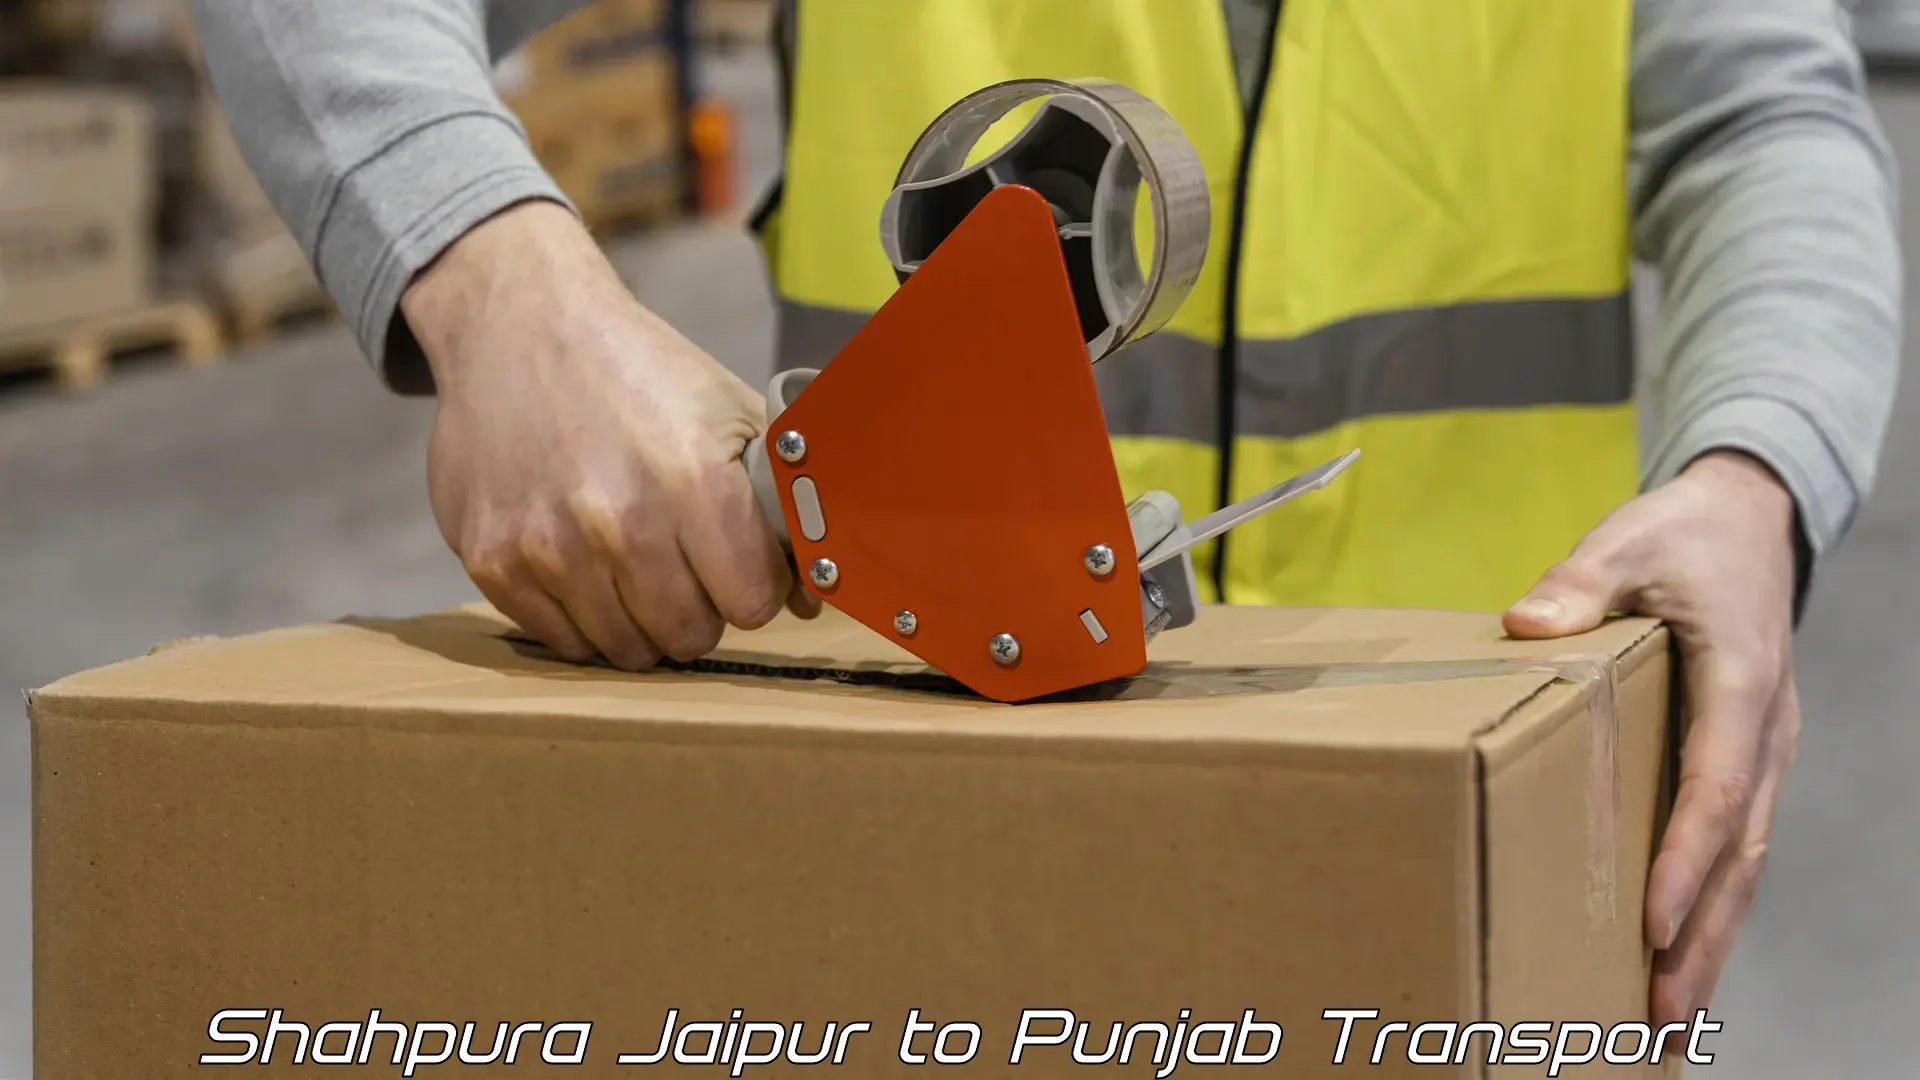 Daily parcel service transport Shahpura Jaipur to Sangrur